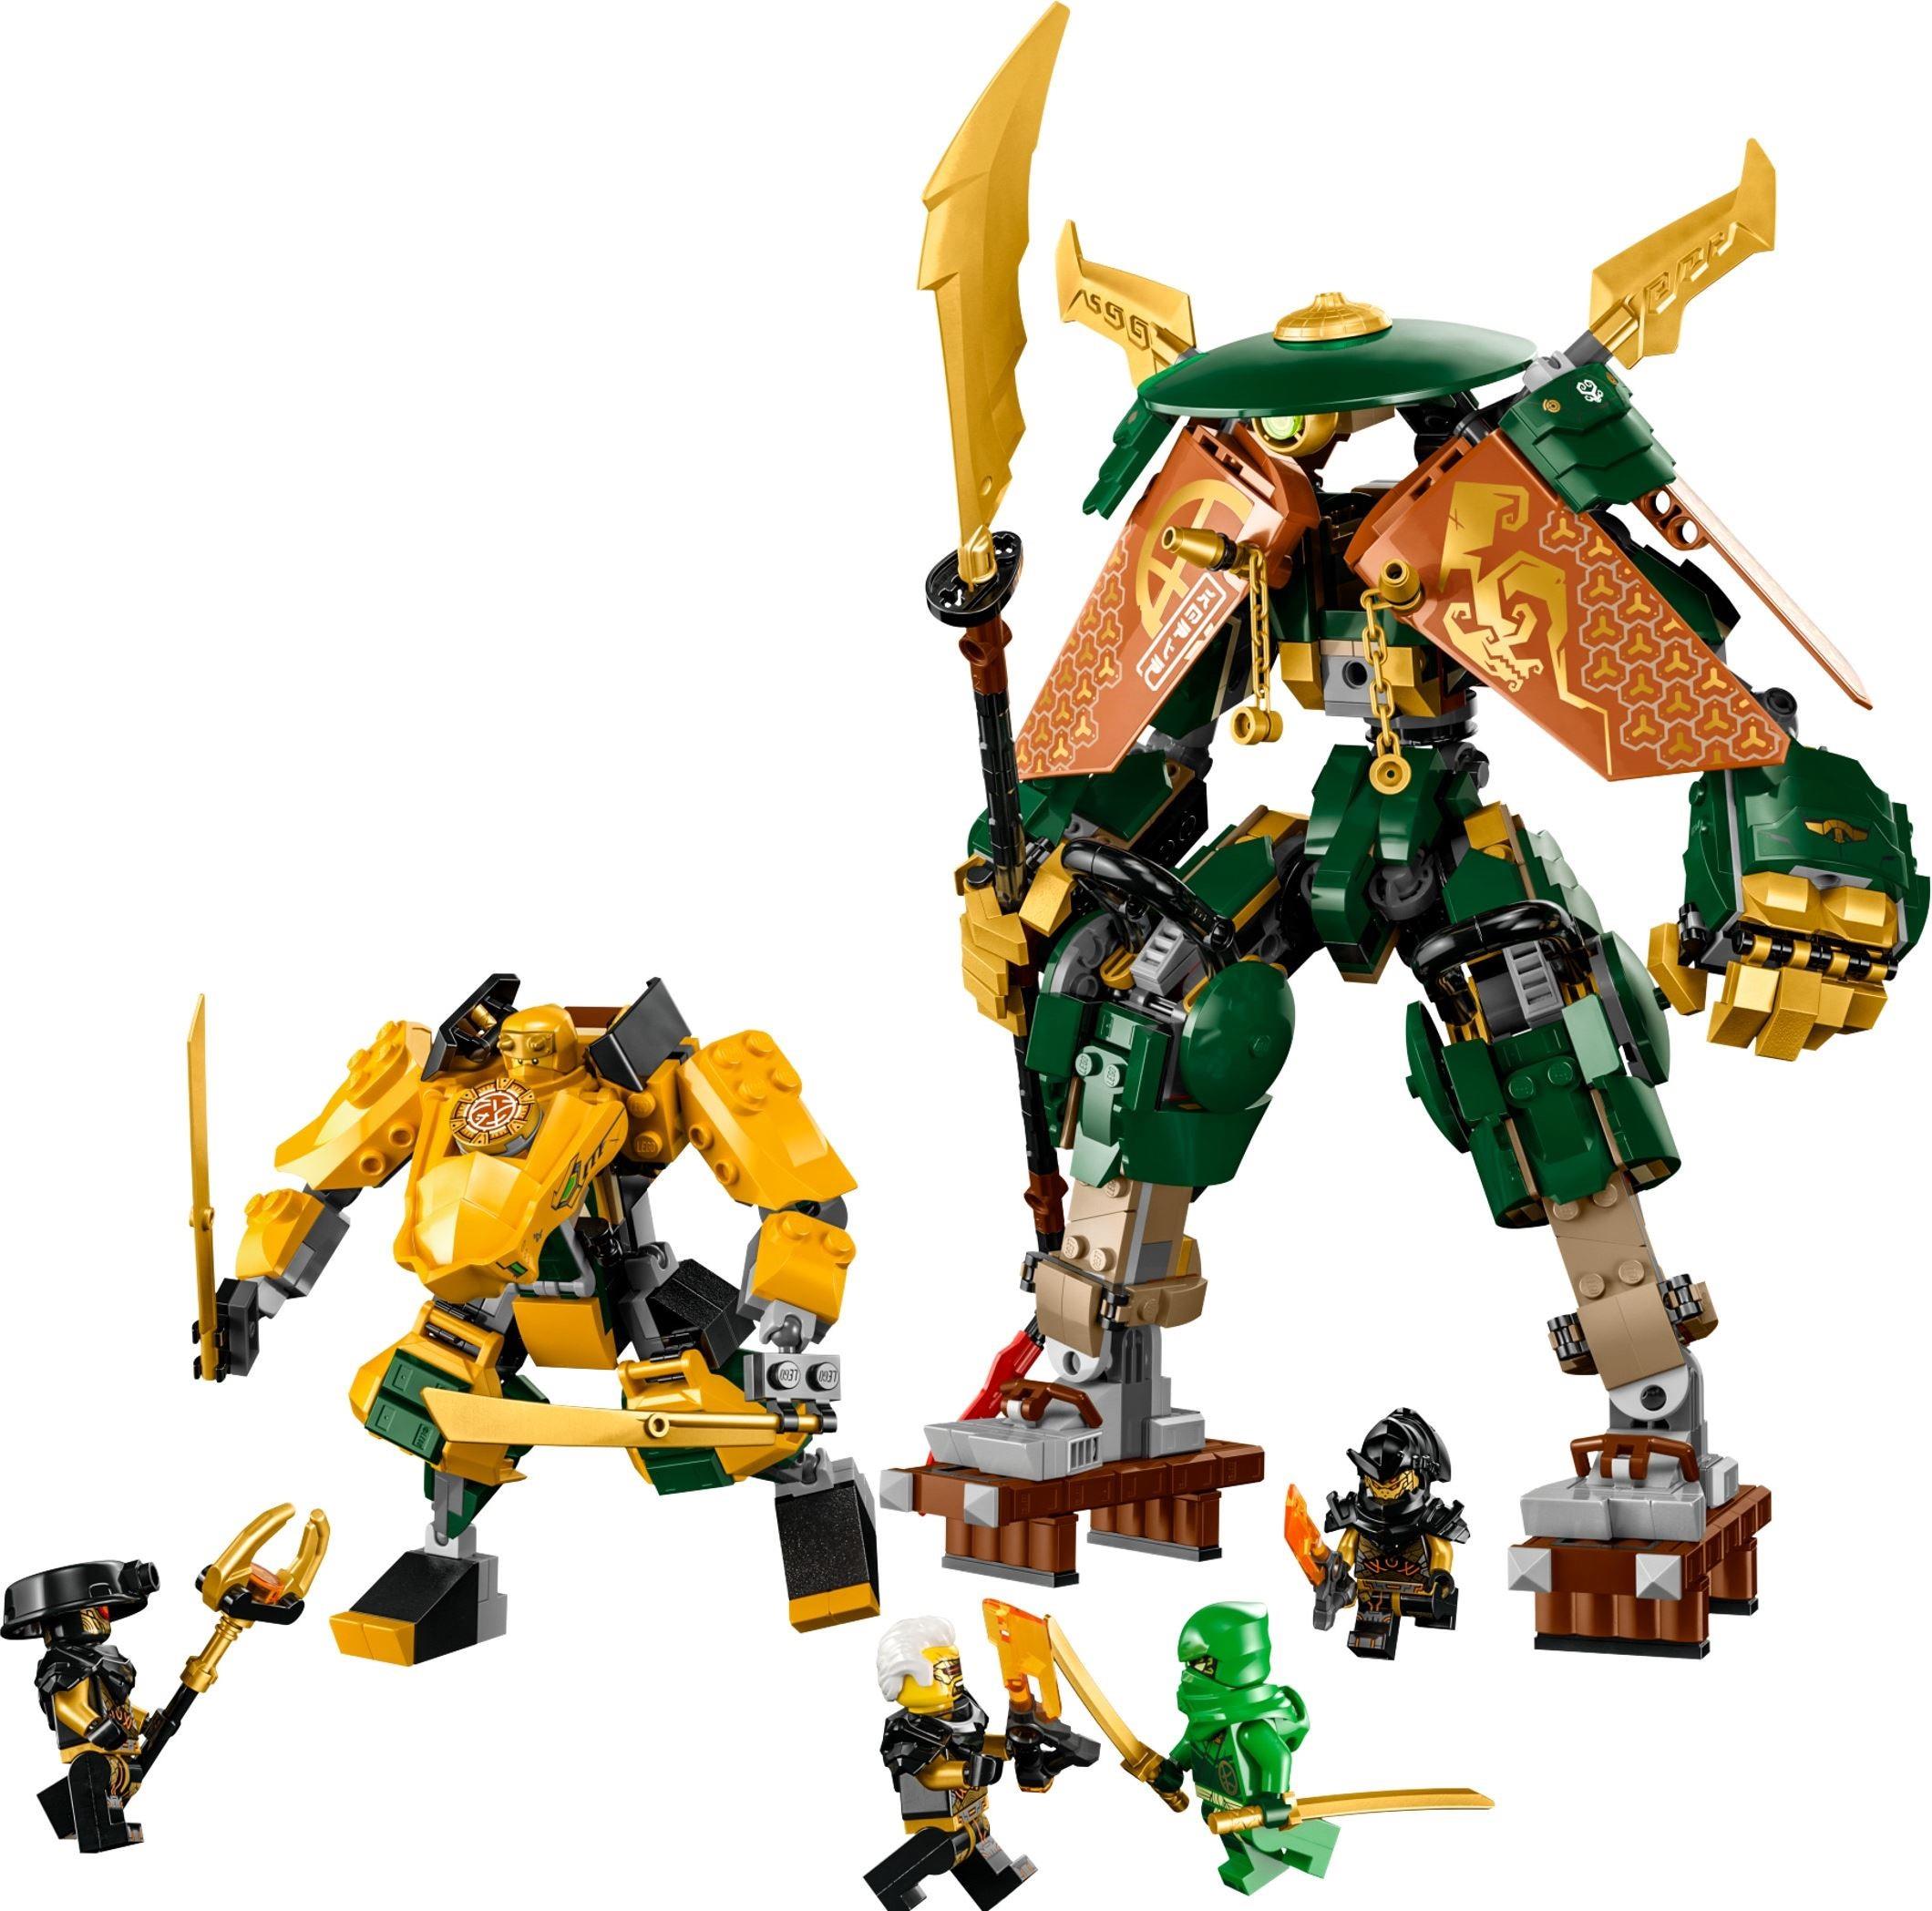 Lego Ninjago Dragons Rising Minifigure lot of 5 Ninjas Jay Kai